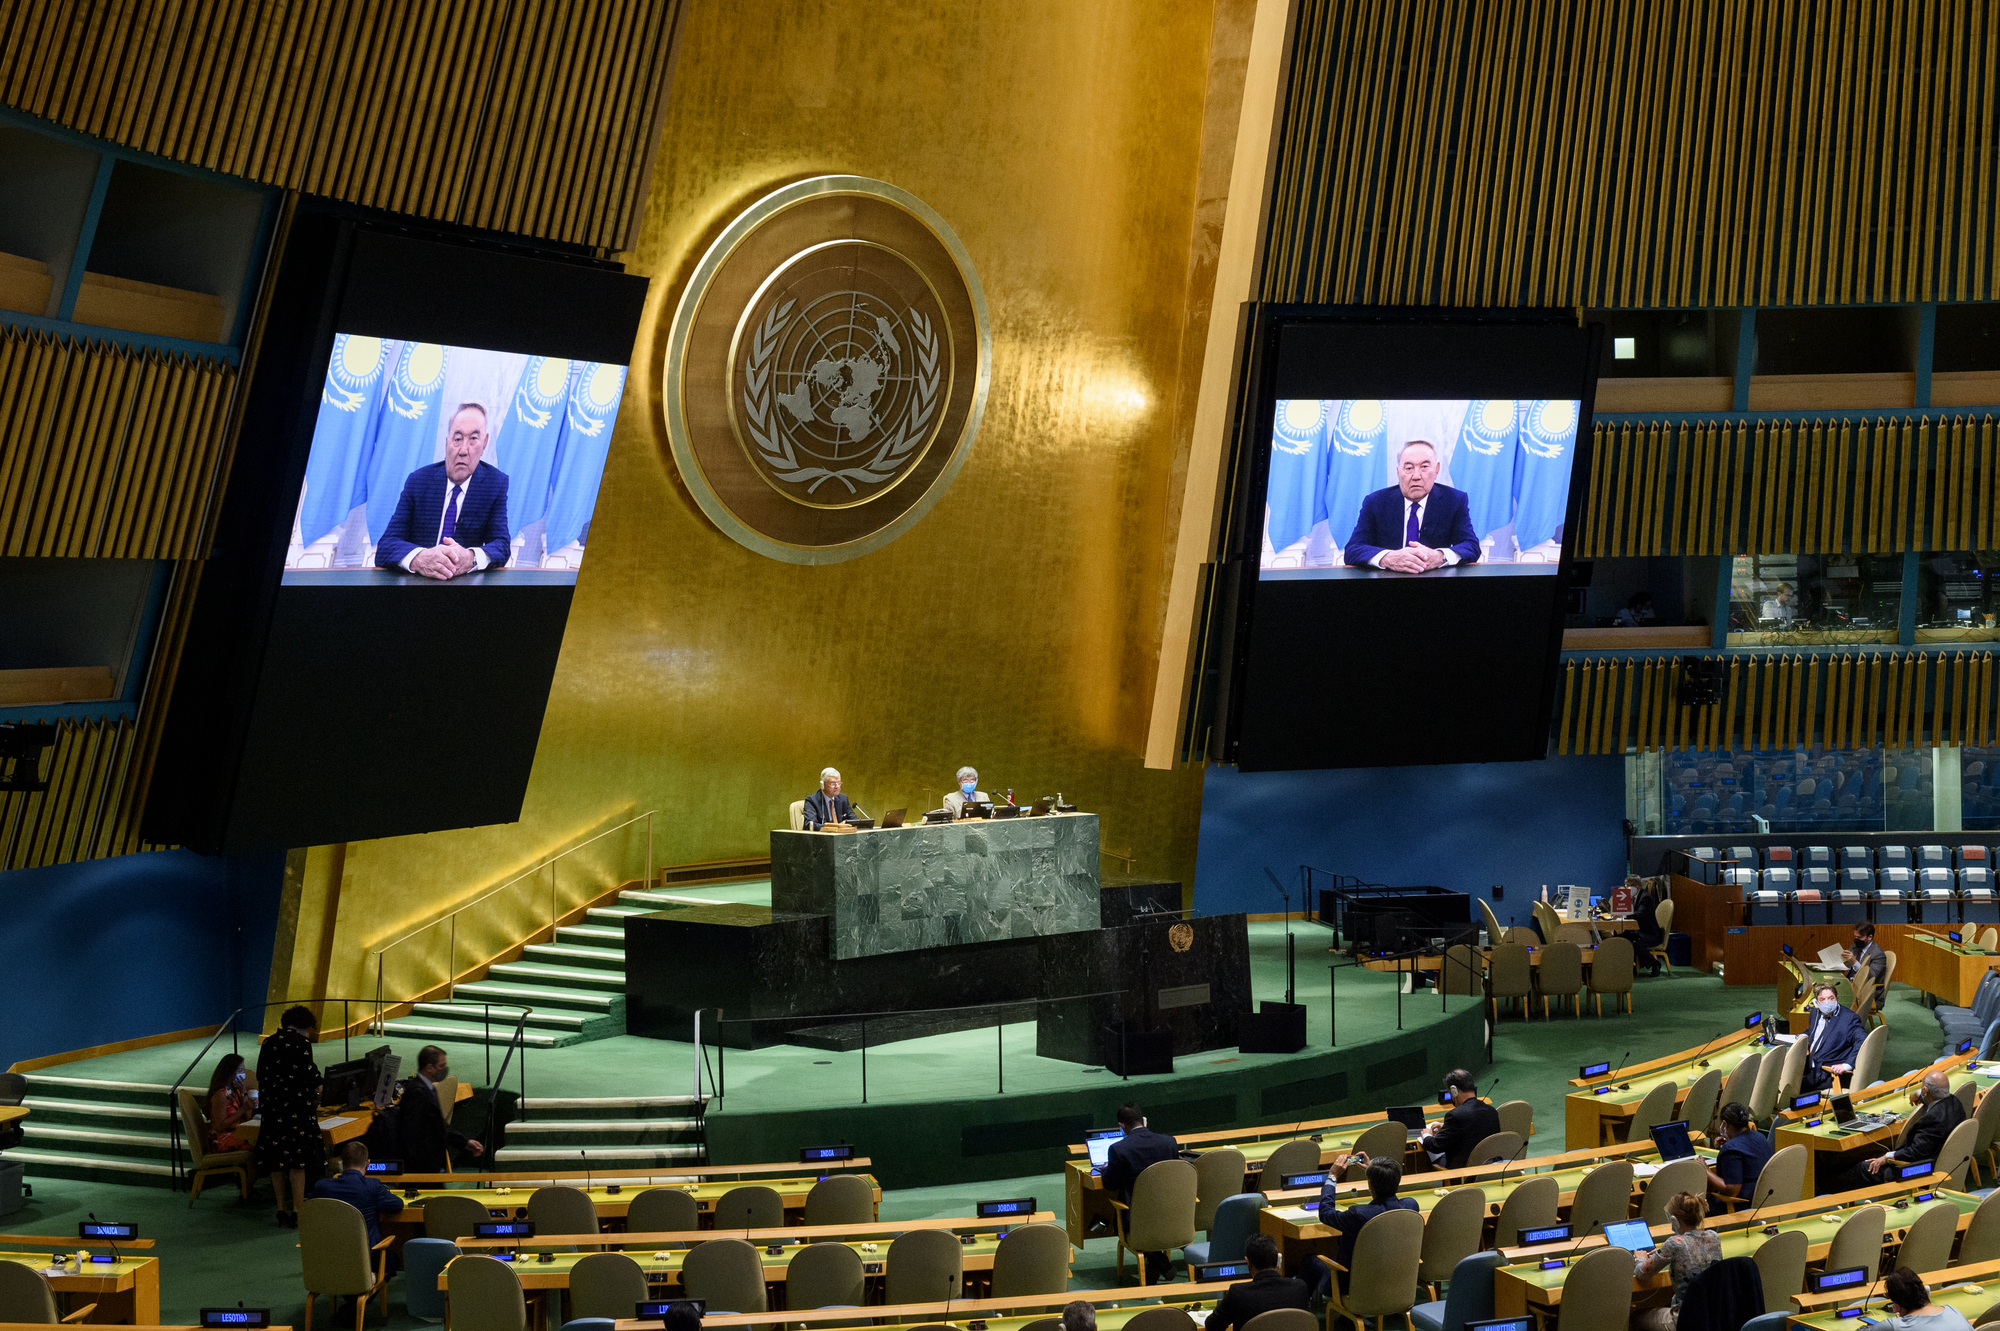 Нурсултан Назарбаев обратился к участникам заседания Генеральной Ассамблеи ООН по случаю Международного дня действий против ядерных испытаний